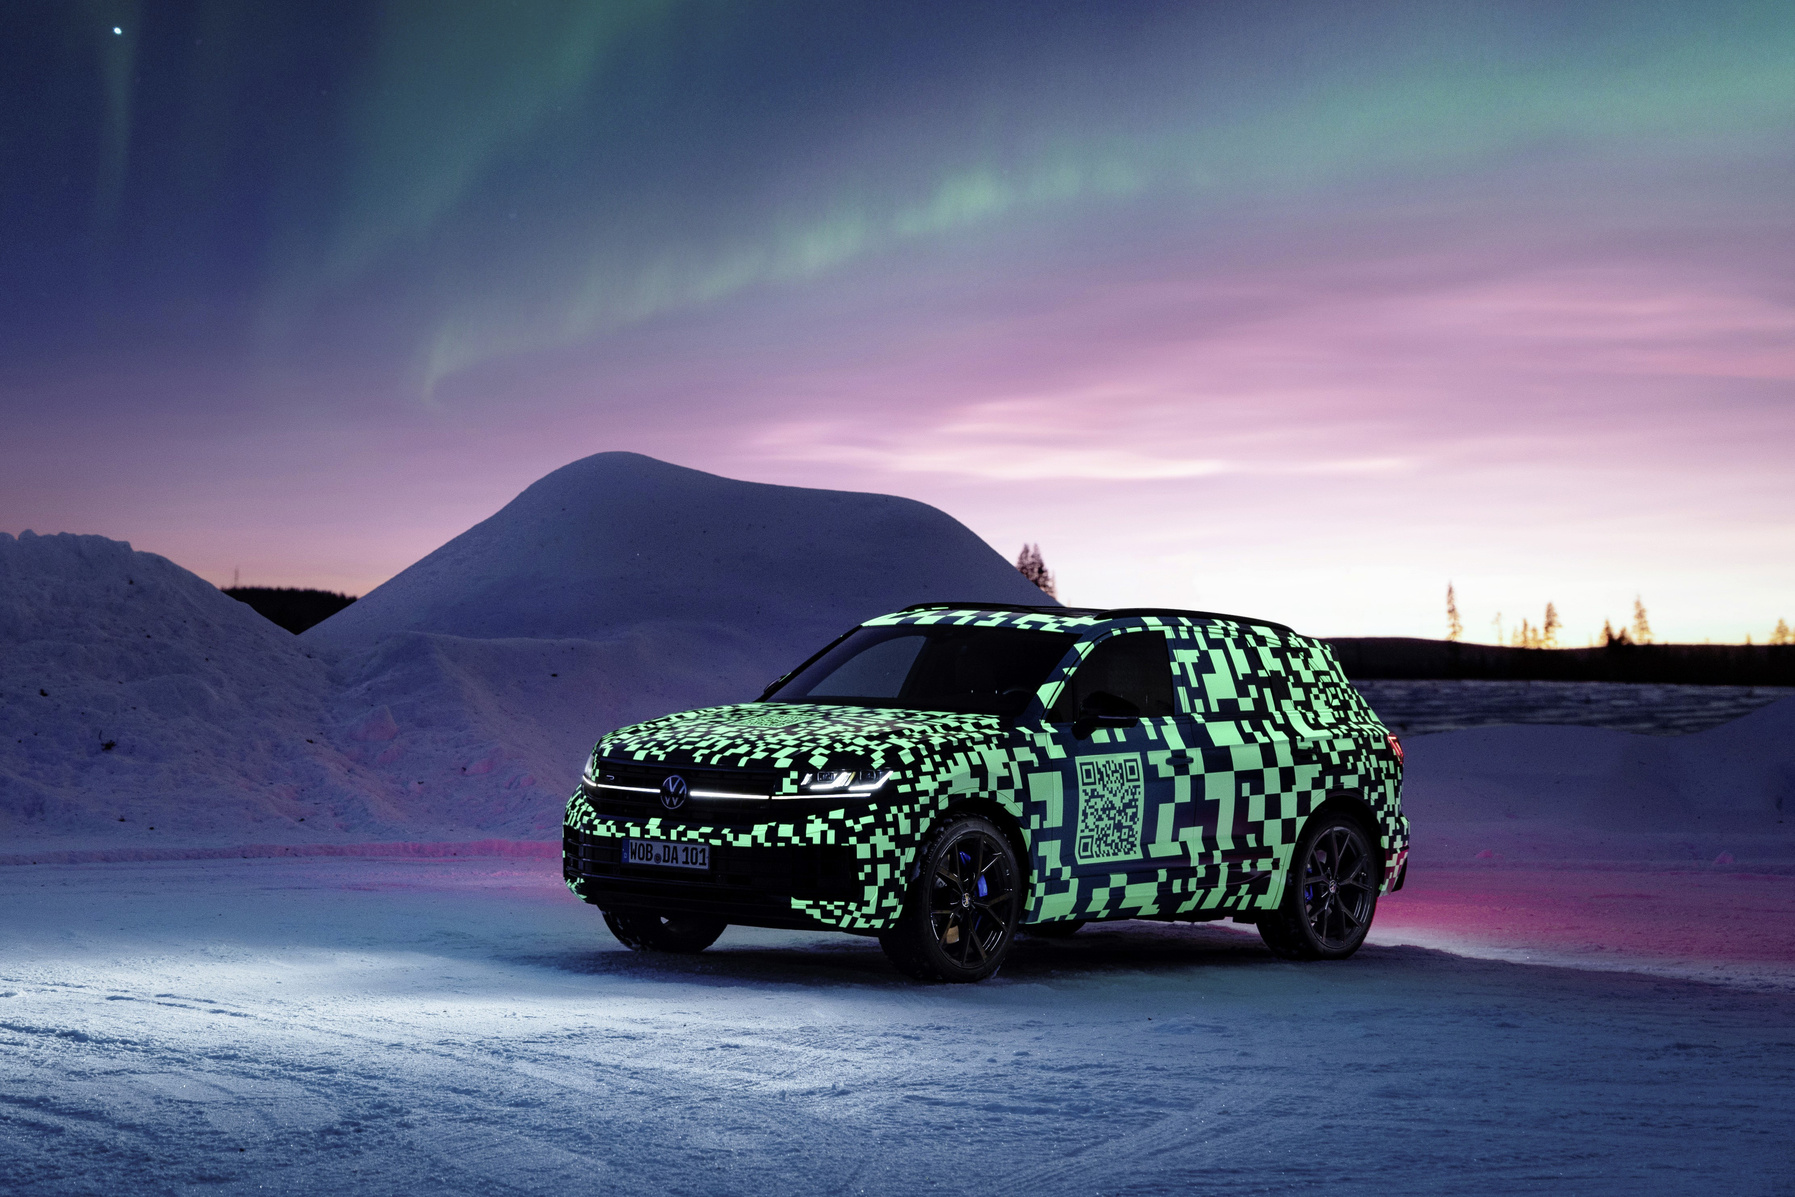 Co testuje Volkswagen u polárního kruhu?